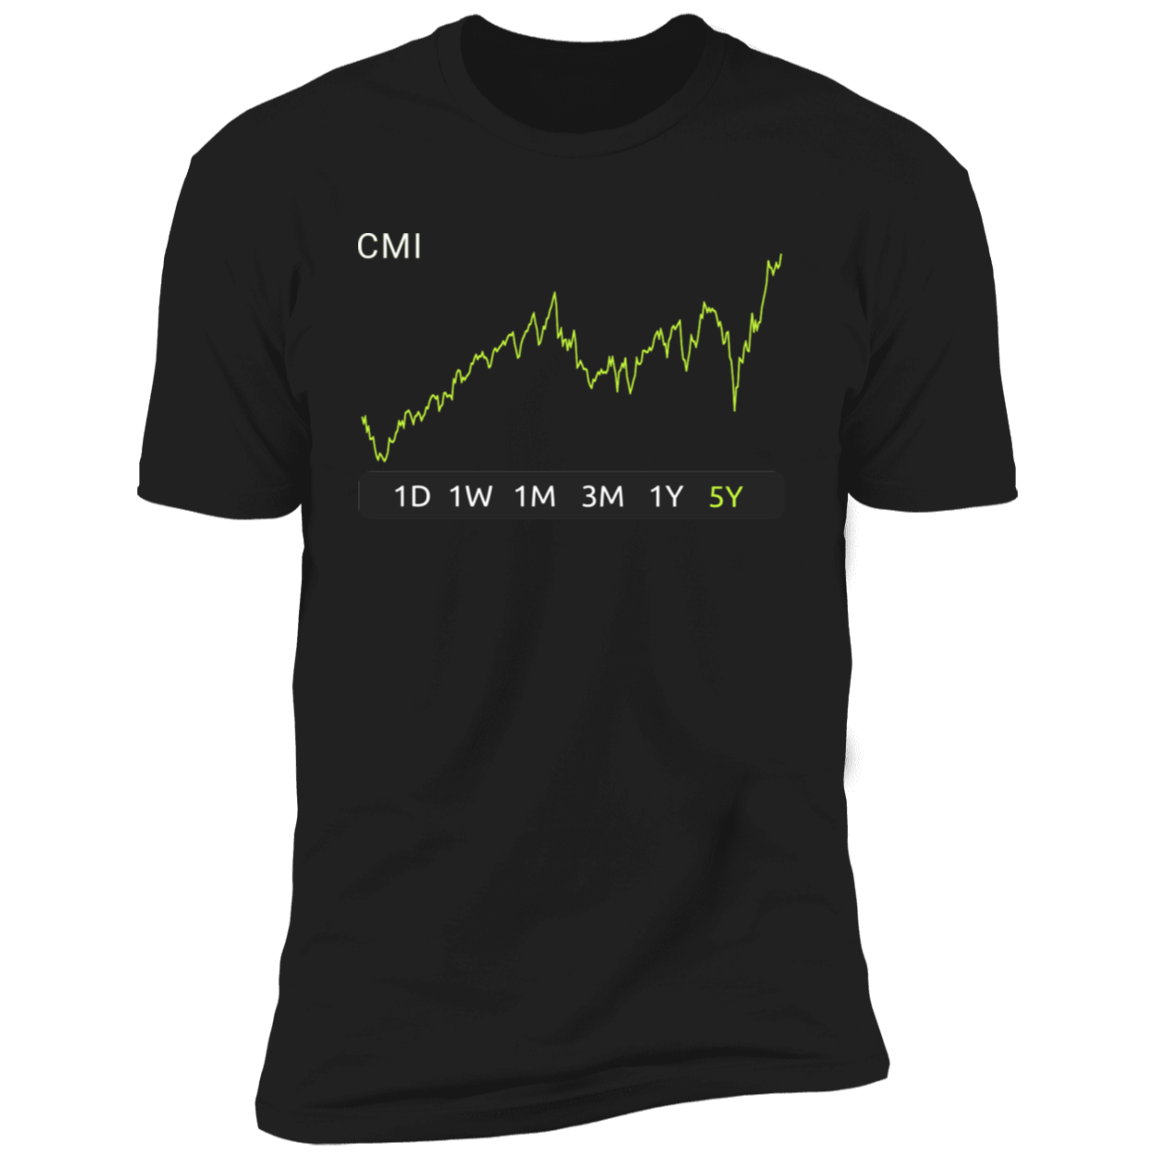 CMI Stock 5y Premium T-Shirt